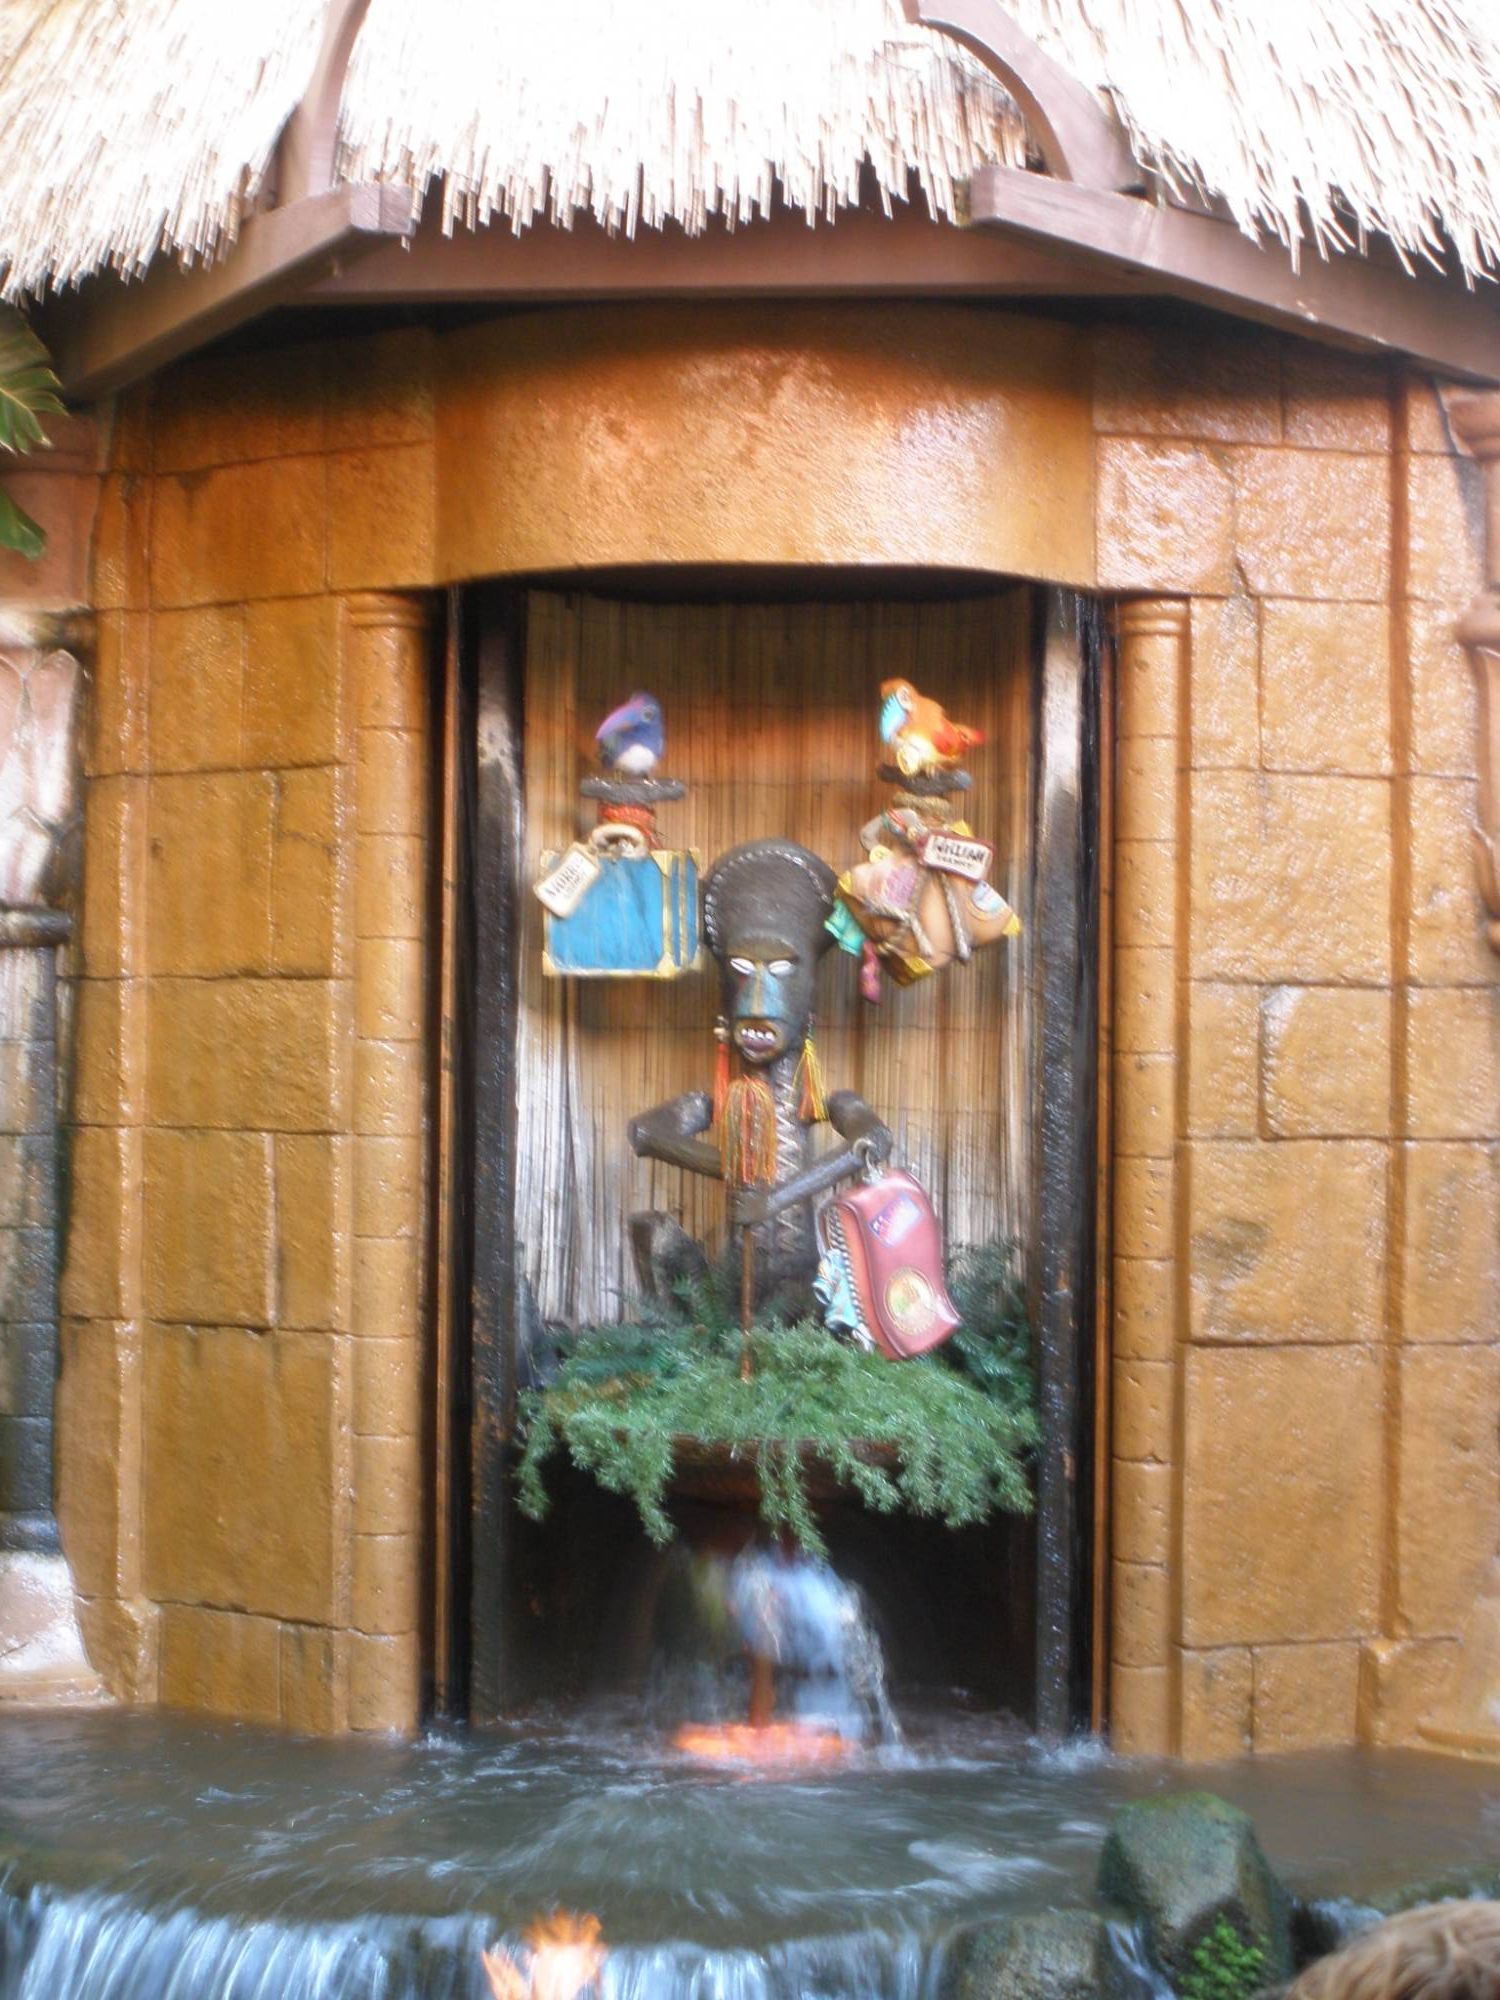 The Enchanted Tiki Room